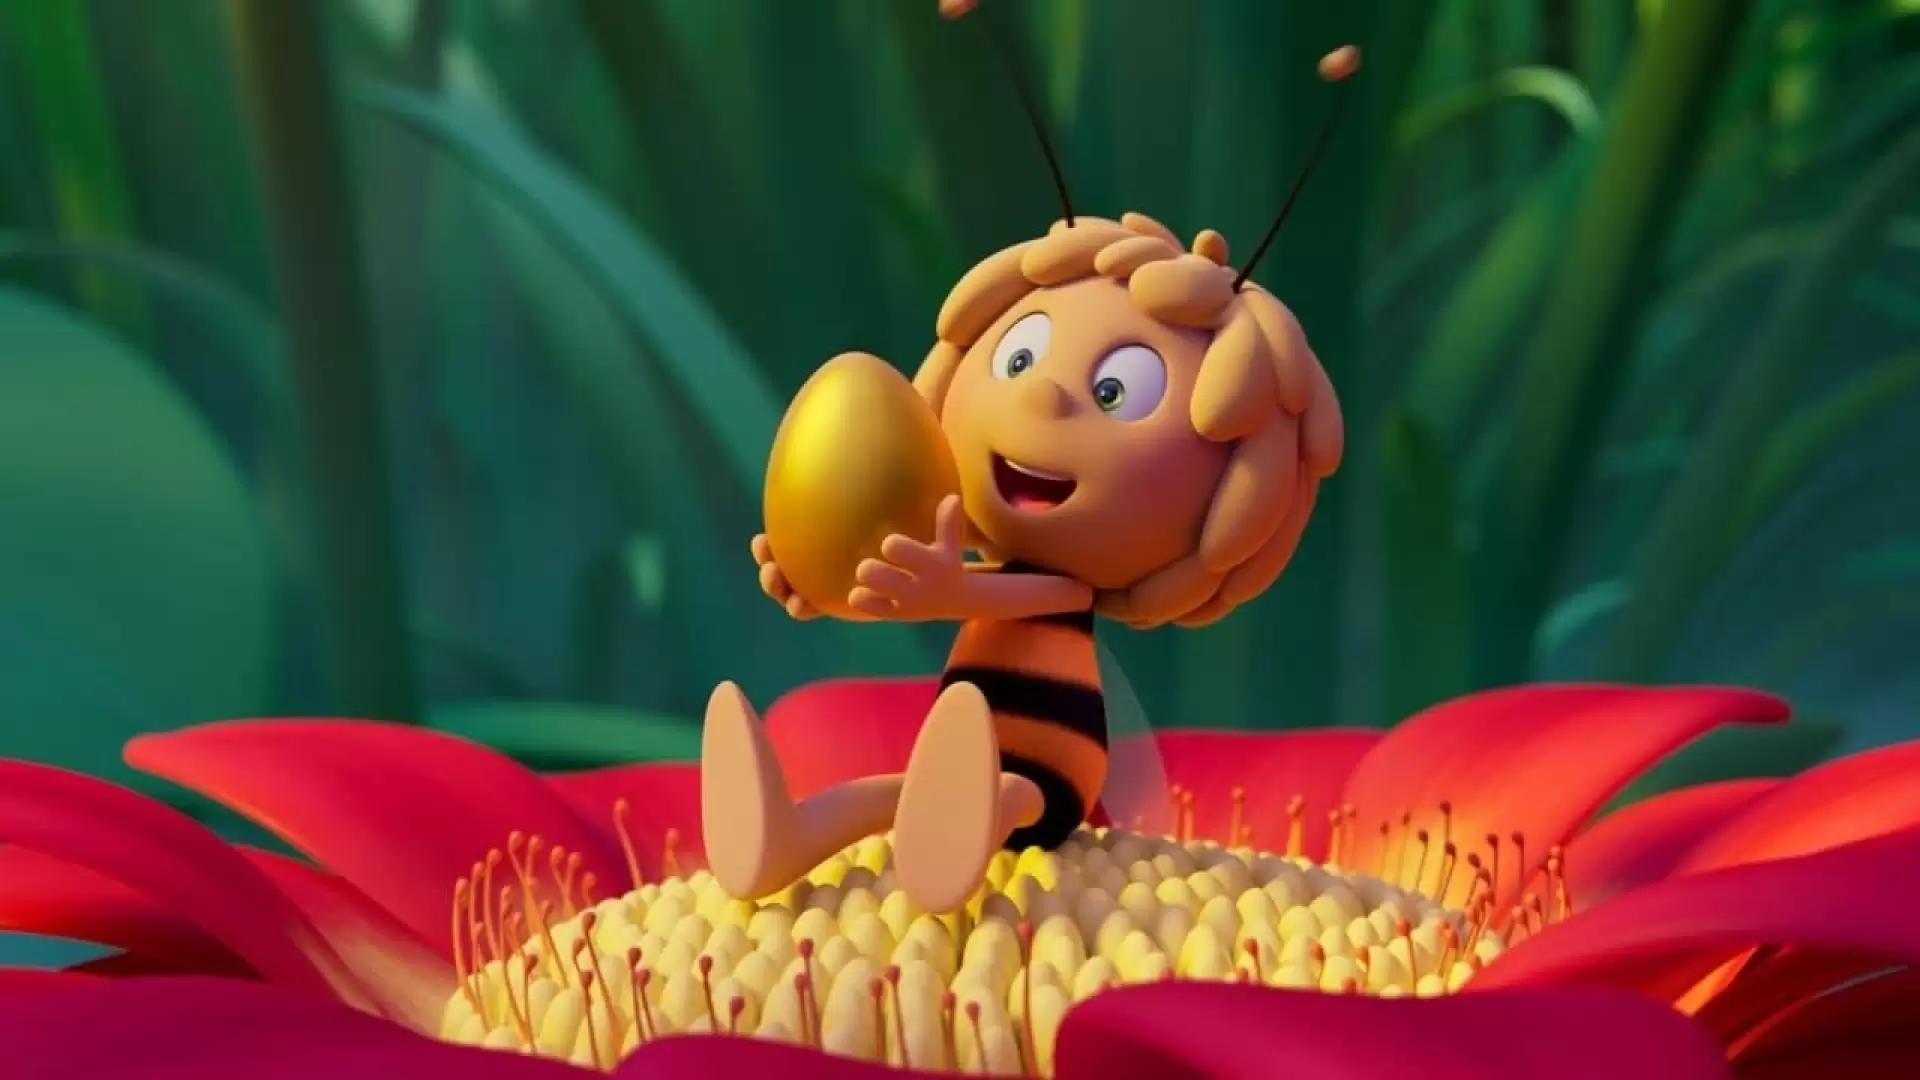 دانلود انیمیشن Maya the Bee 3: The Golden Orb 2021